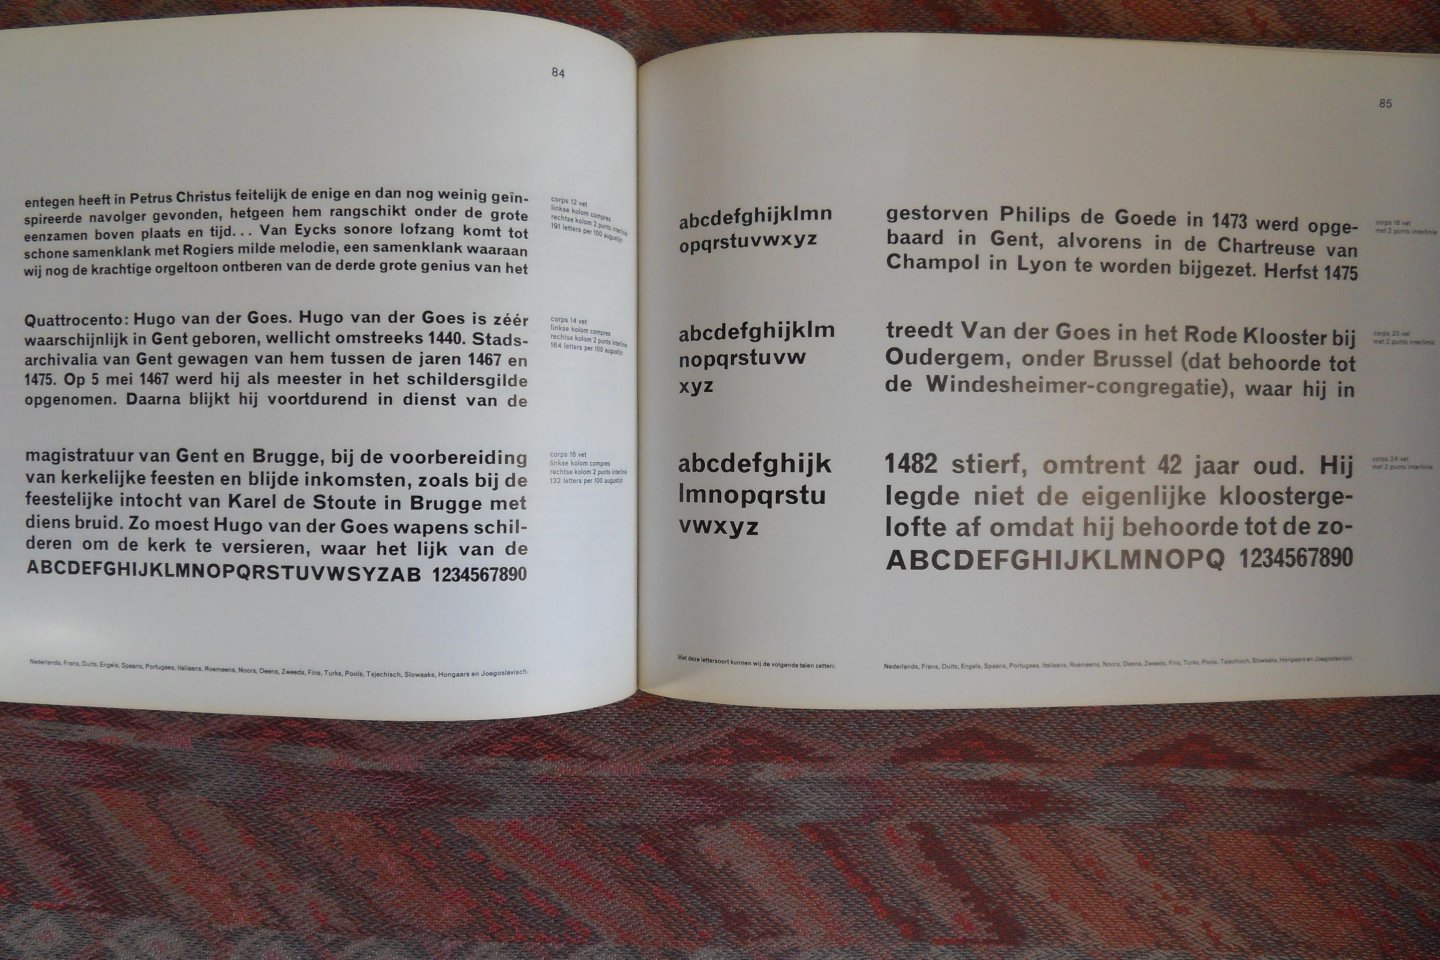 Loosbroek. [ auteur zelf wordt niet genoemd ] - Letterproef Fotografisch Zetten. Uitgave 1966 [rugtekst].